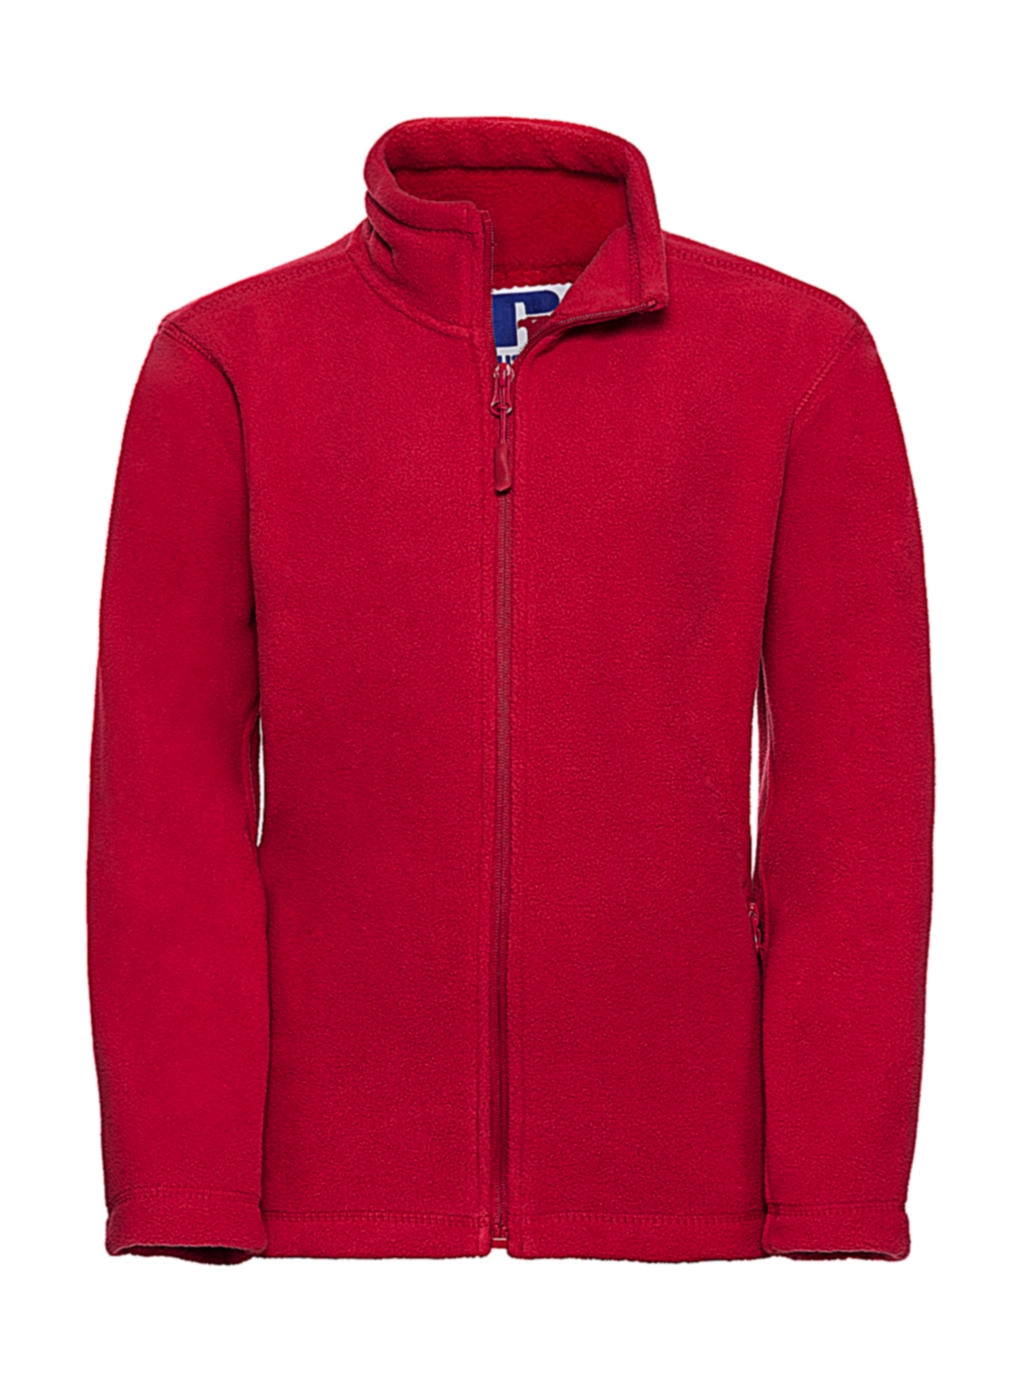 Kids` Full Zip Outdoor Fleece zum Besticken und Bedrucken in der Farbe Classic Red mit Ihren Logo, Schriftzug oder Motiv.